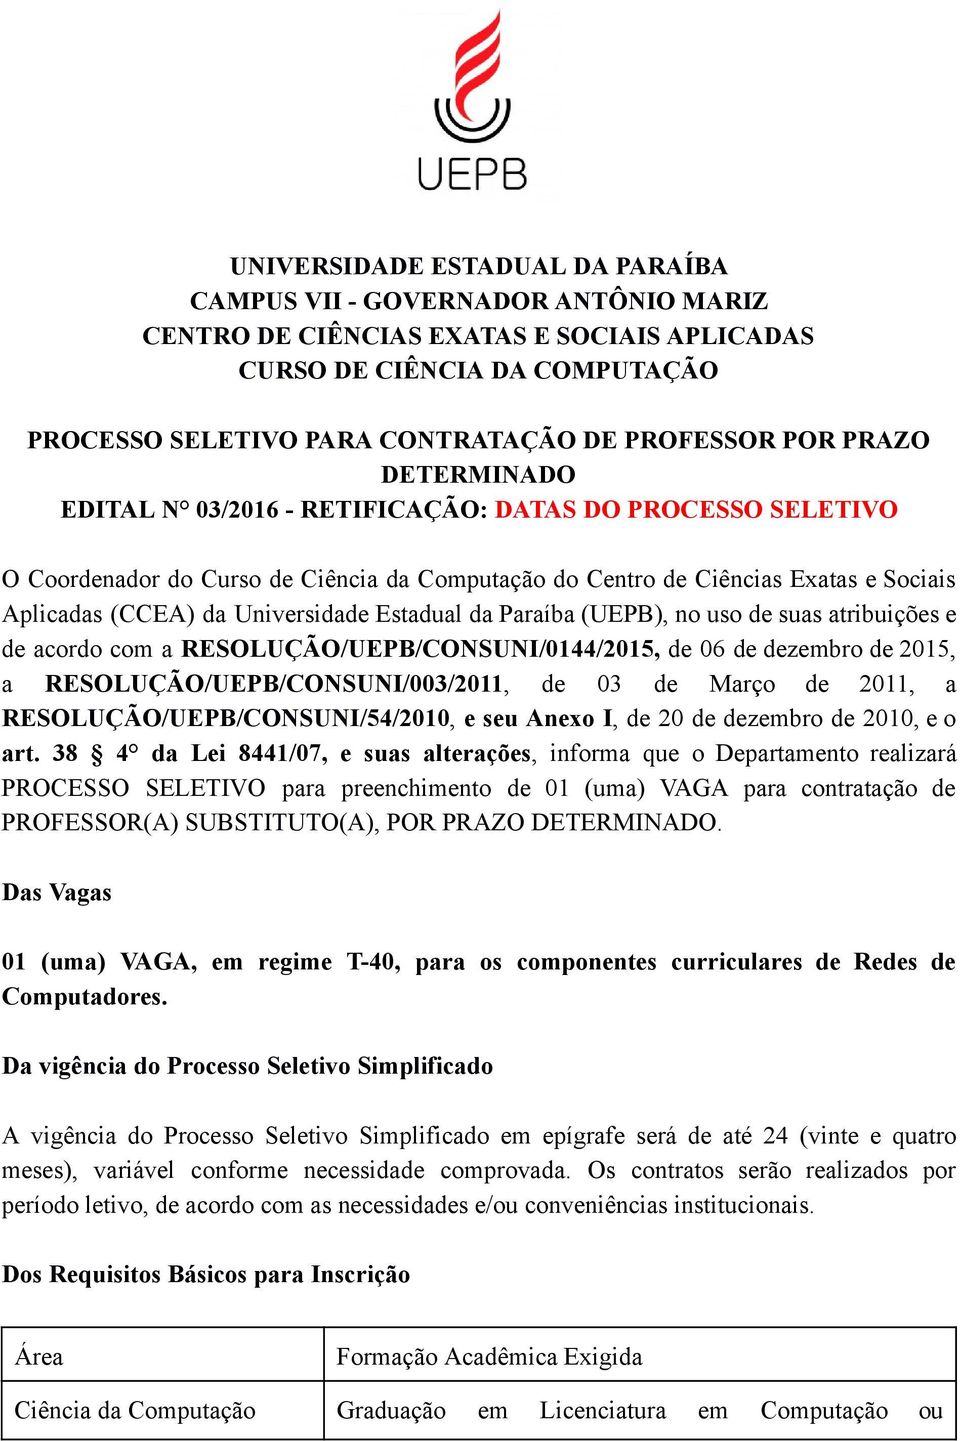 Estadual da Paraíba (UEPB), no uso de suas atribuições e de acordo com a RESOLUÇÃO/UEPB/CONSUNI/0144/2015, de 06 de dezembro de 2015, a RESOLUÇÃO/UEPB/CONSUNI/003/2011, de 03 de Março de 2011, a